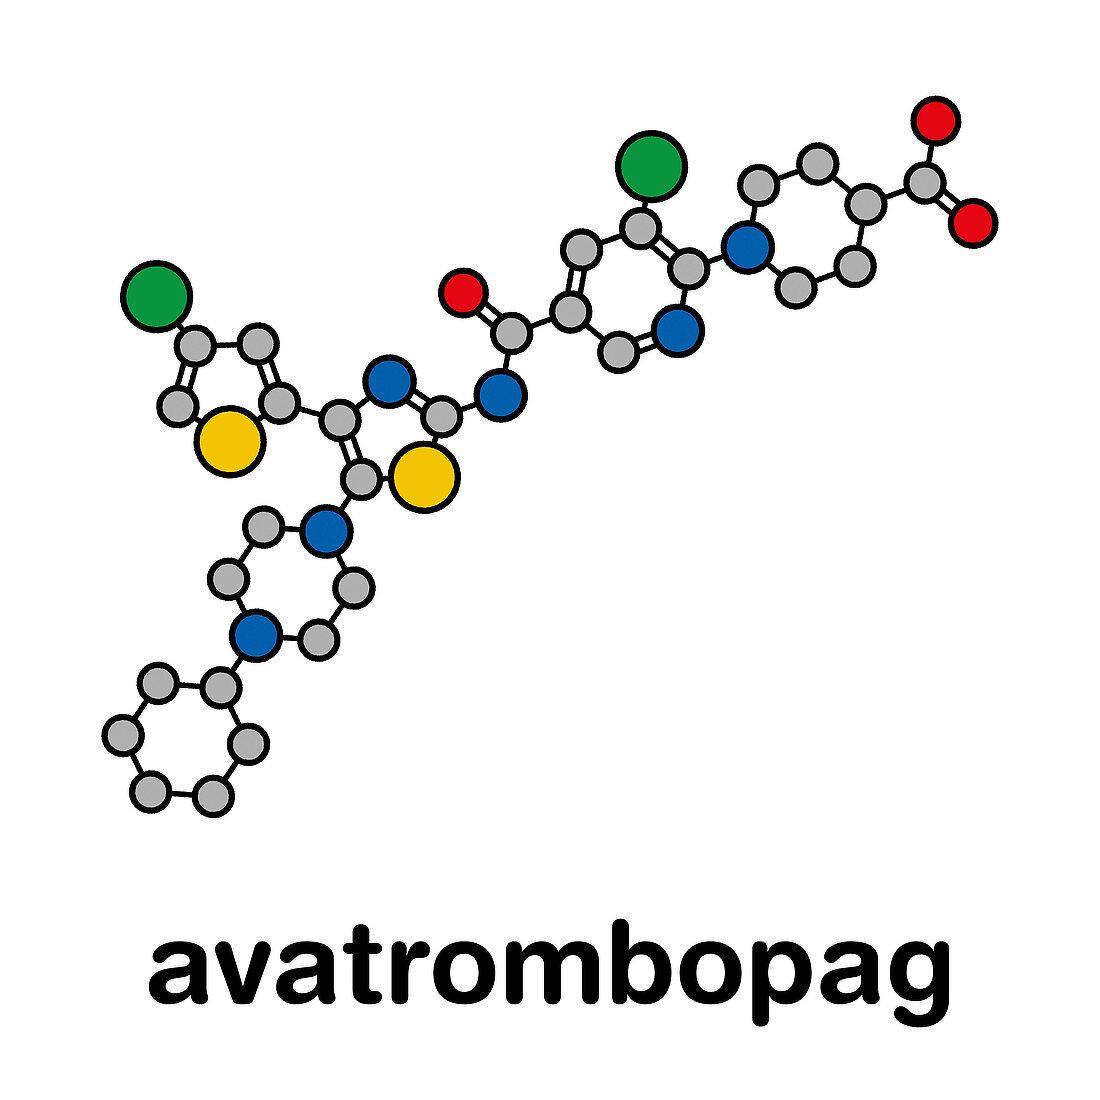 Avatrombopag thrombocytopenia drug molecule